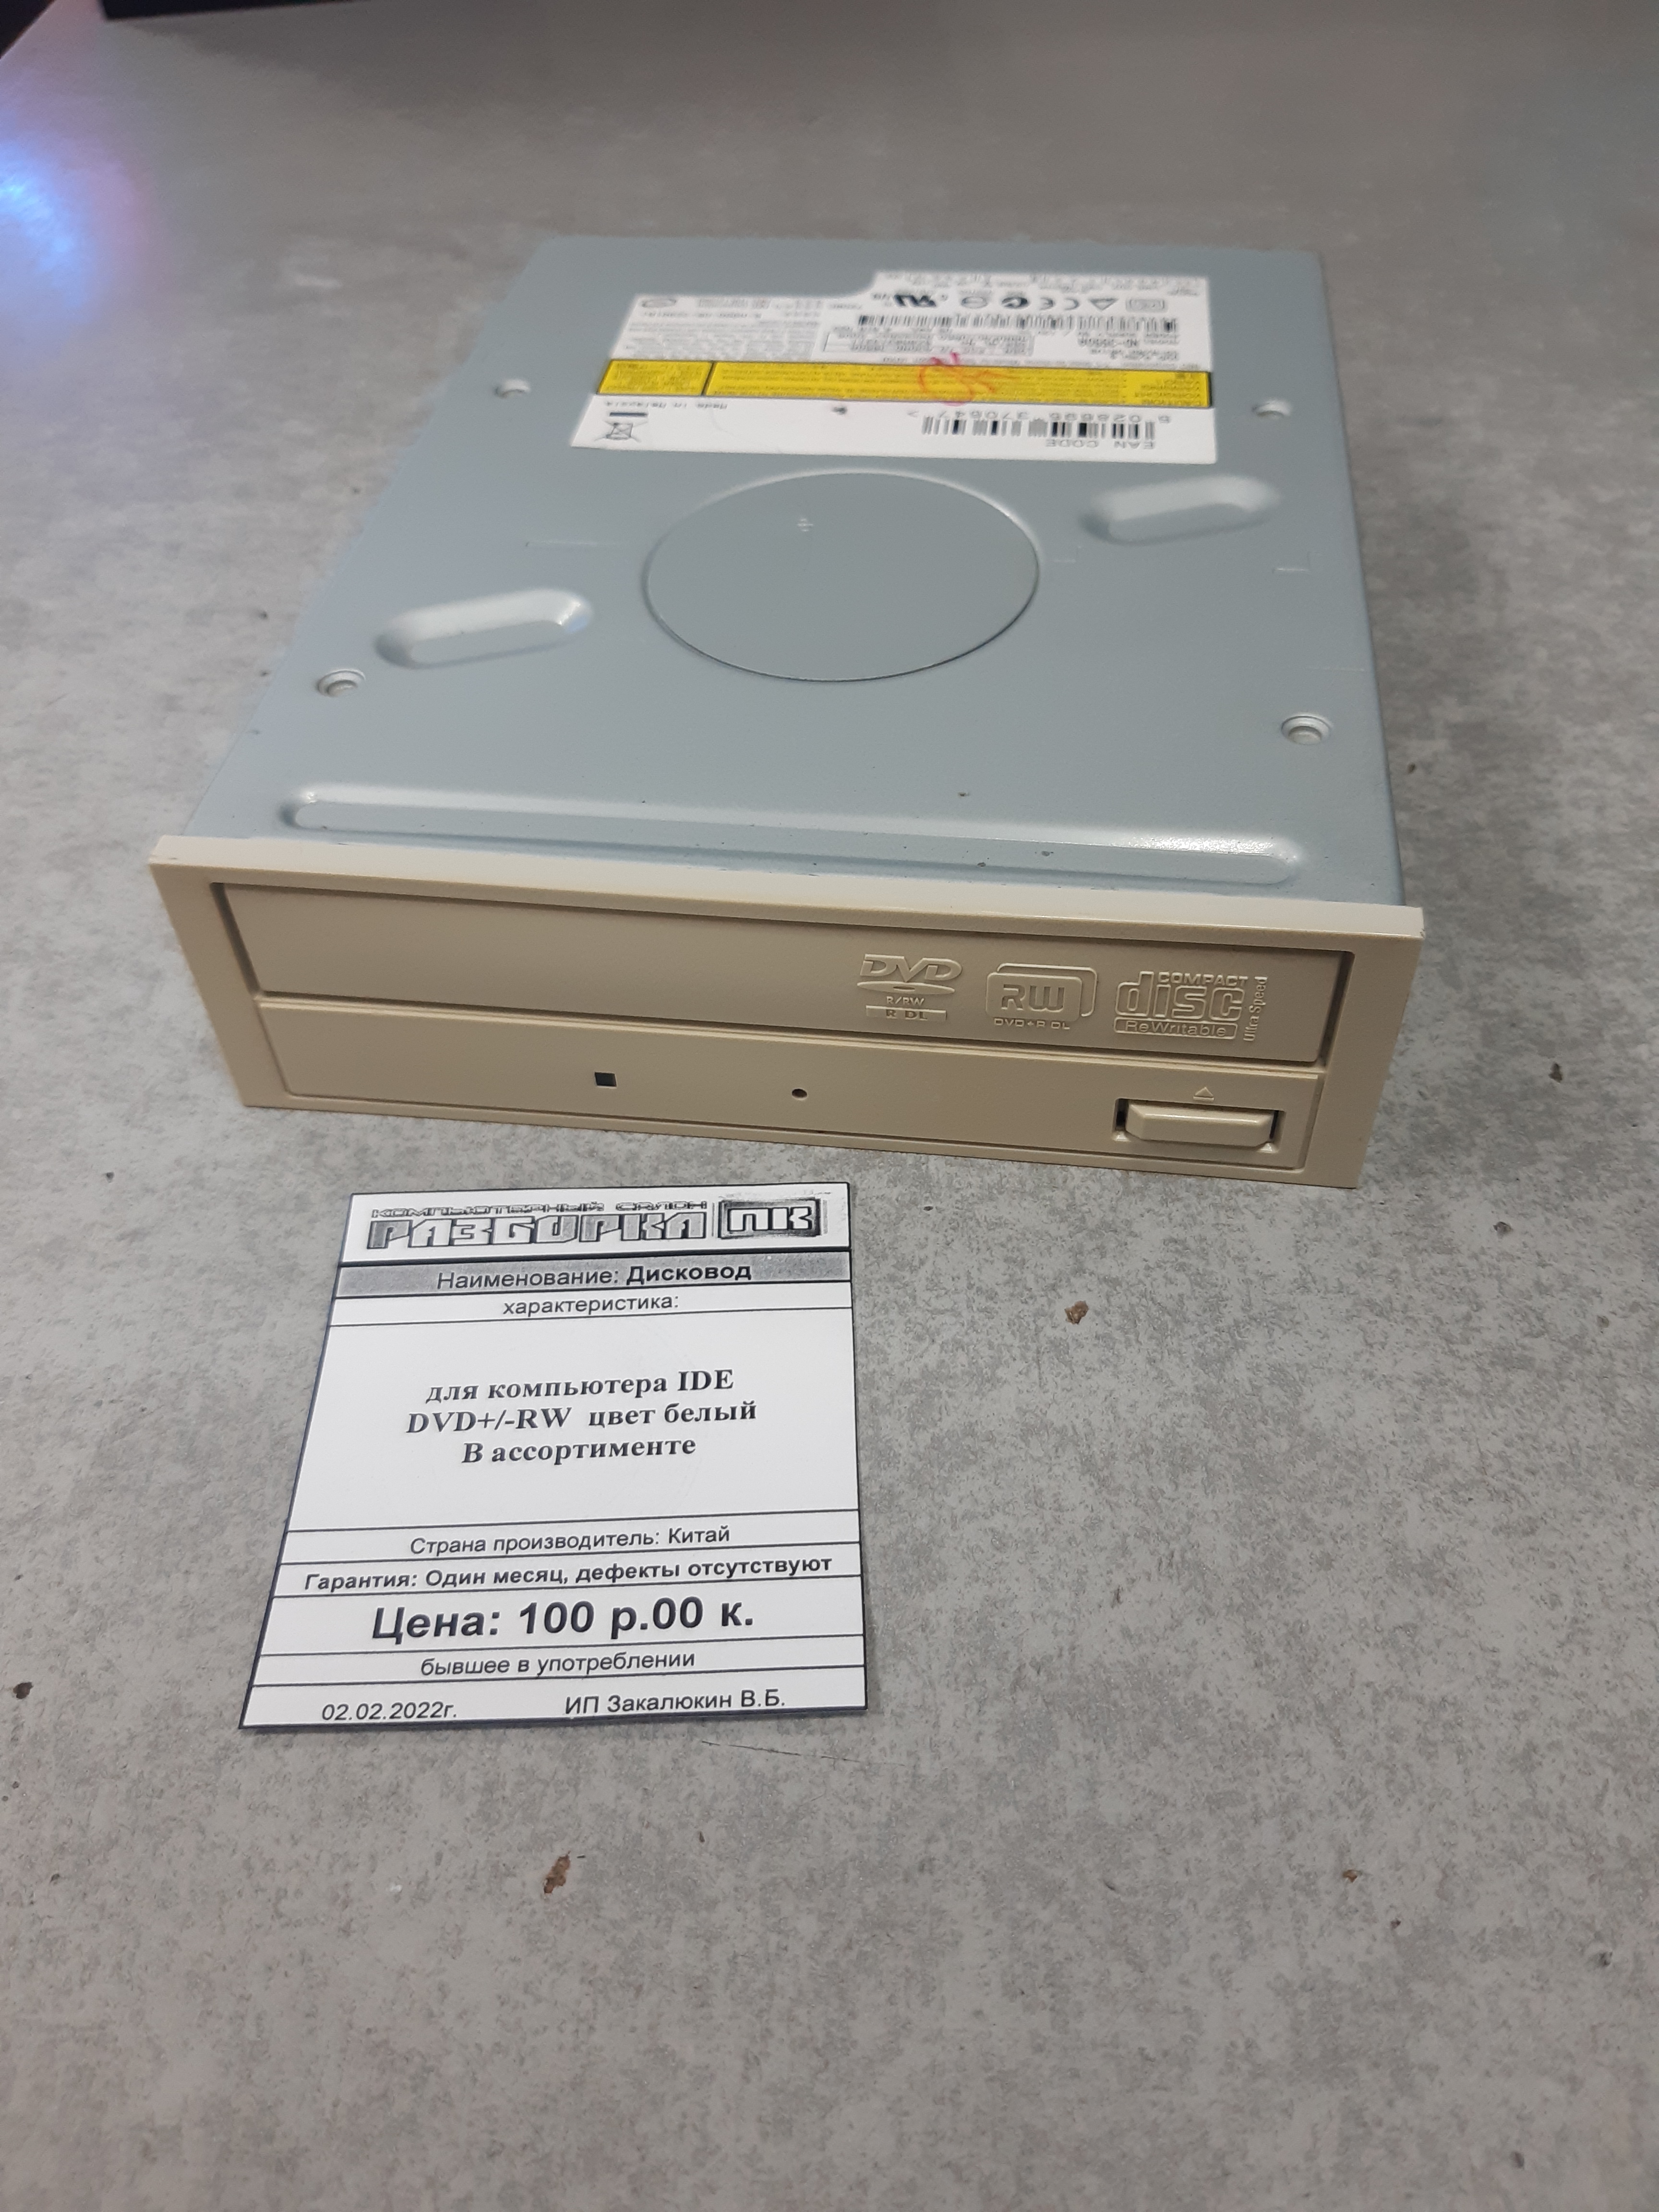 Дисковод для компьютера IDE DVD+/-RW  цвет белый